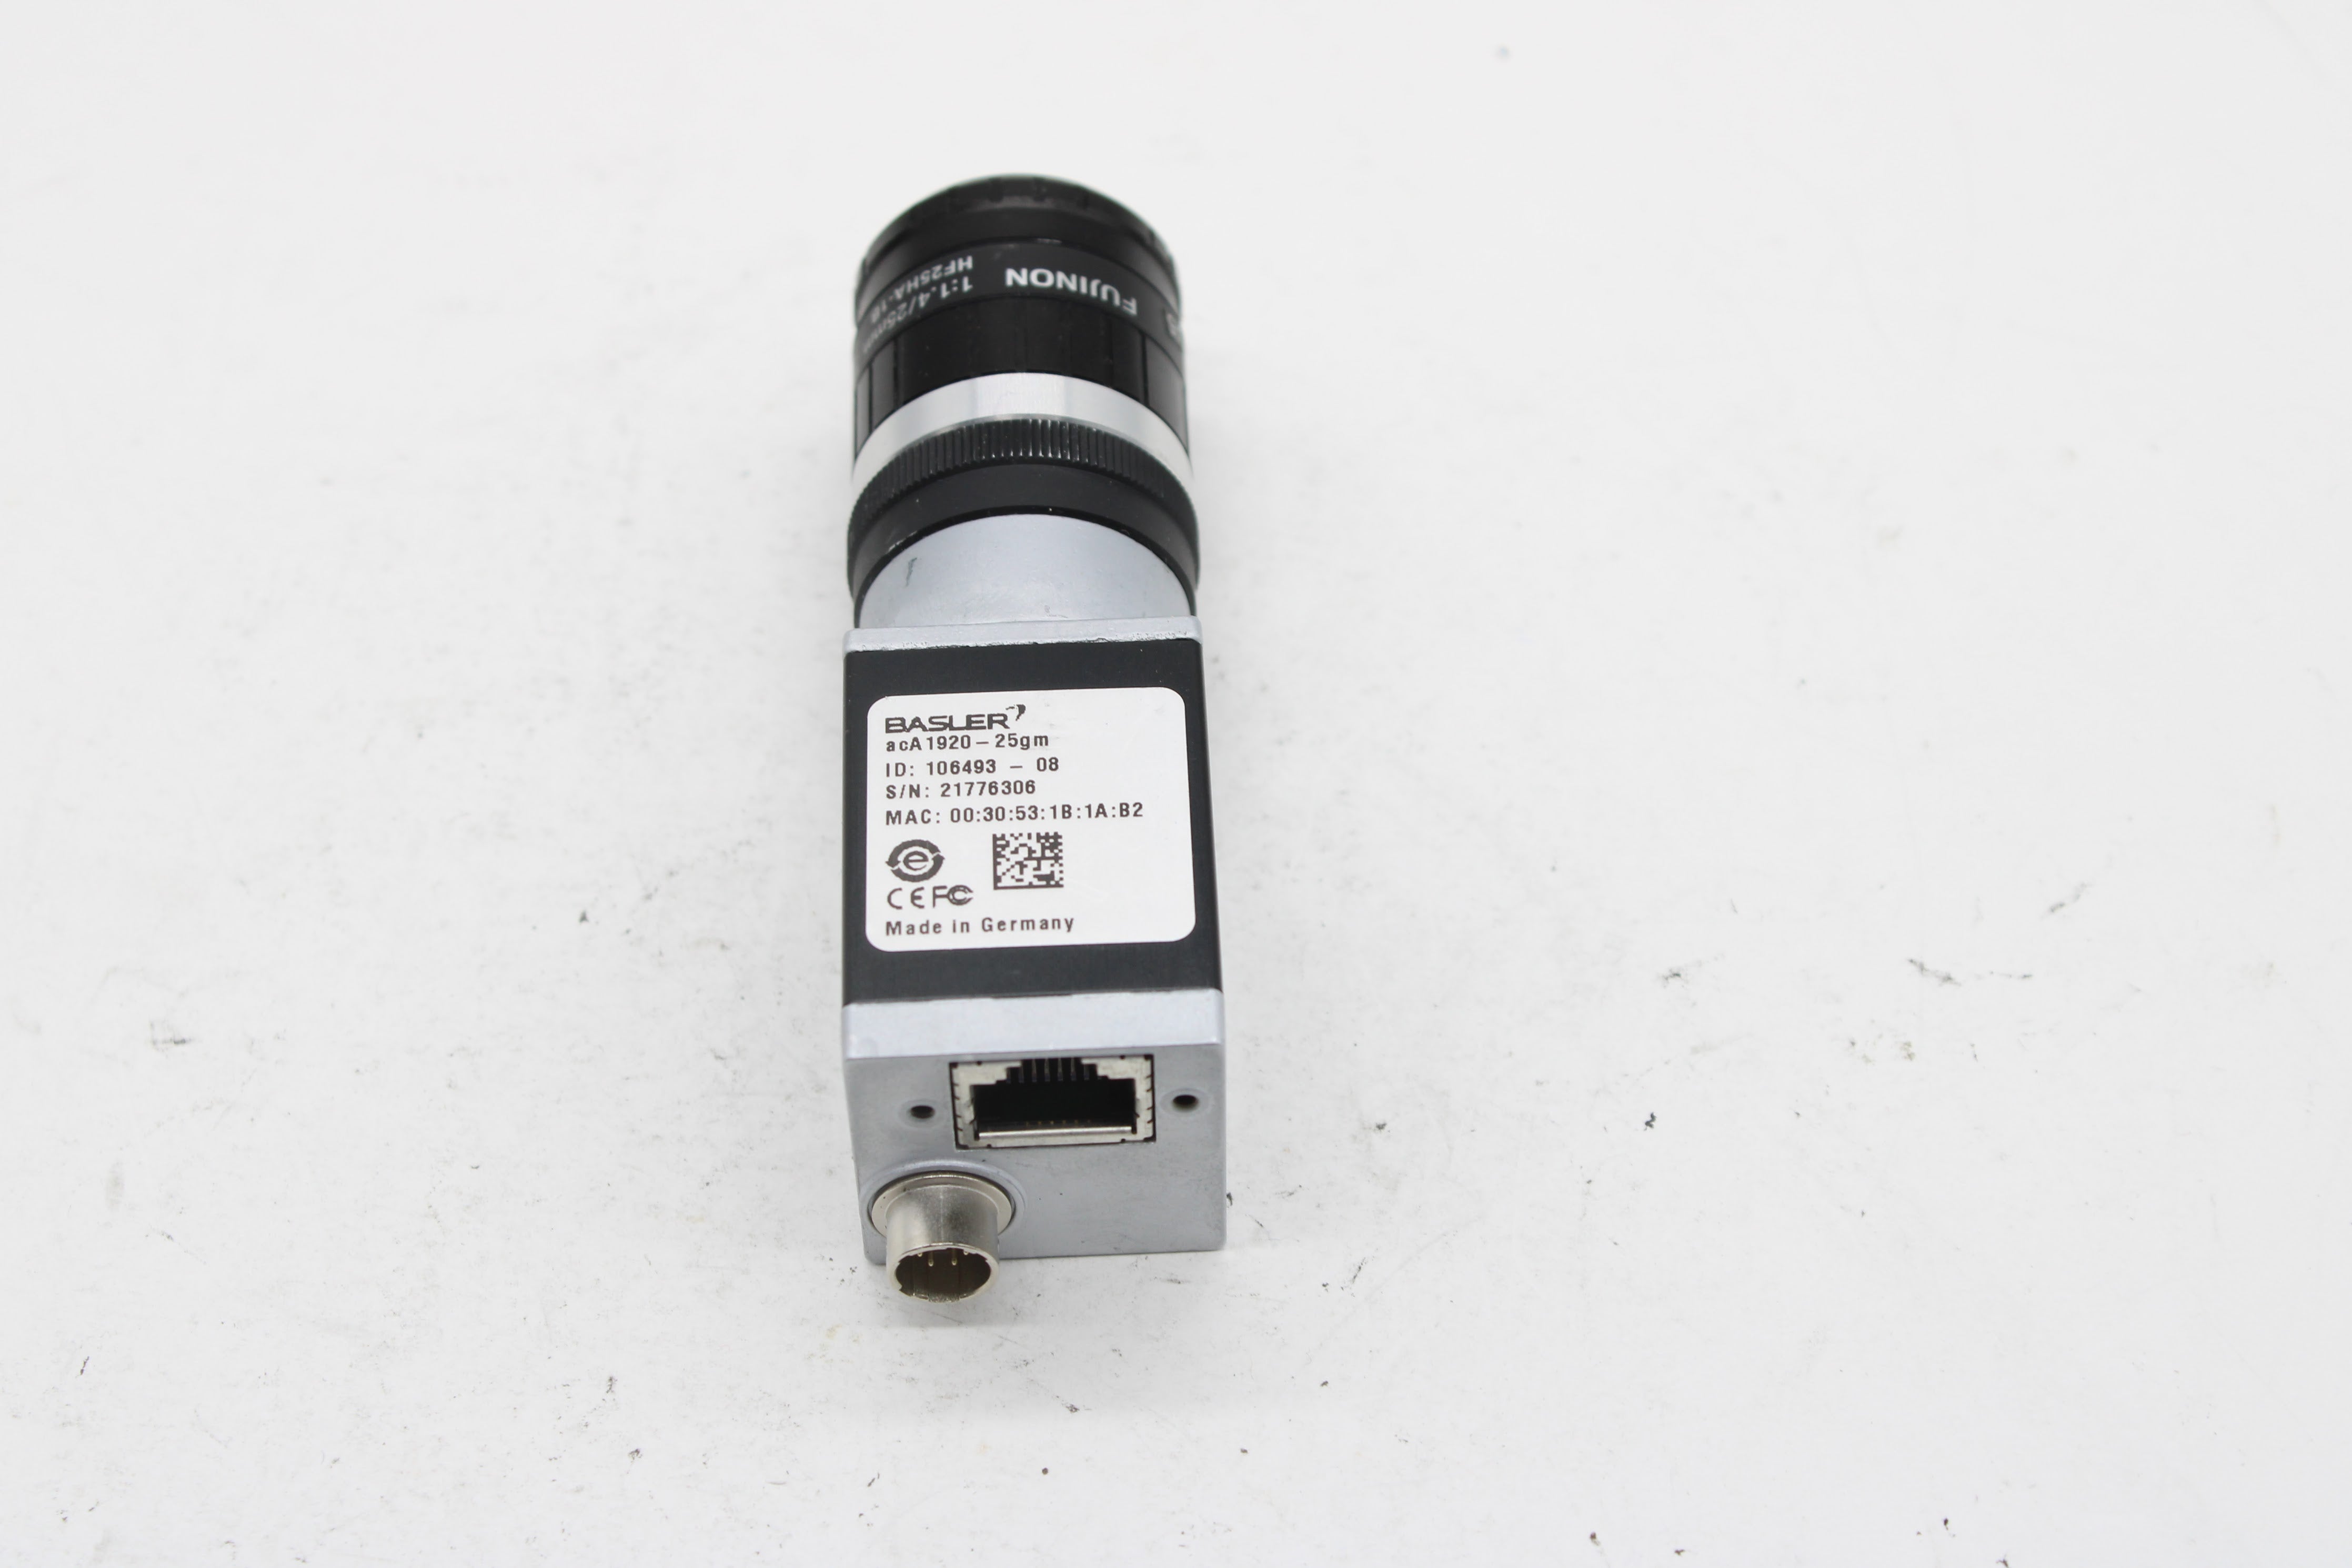 公式銀座(値下げ)Made in Germany BASLER ace Classicエリアスキャンカメラ 104845-12 / モリテックス 2メガピクセルマクロレンズ付き プロ用、業務用